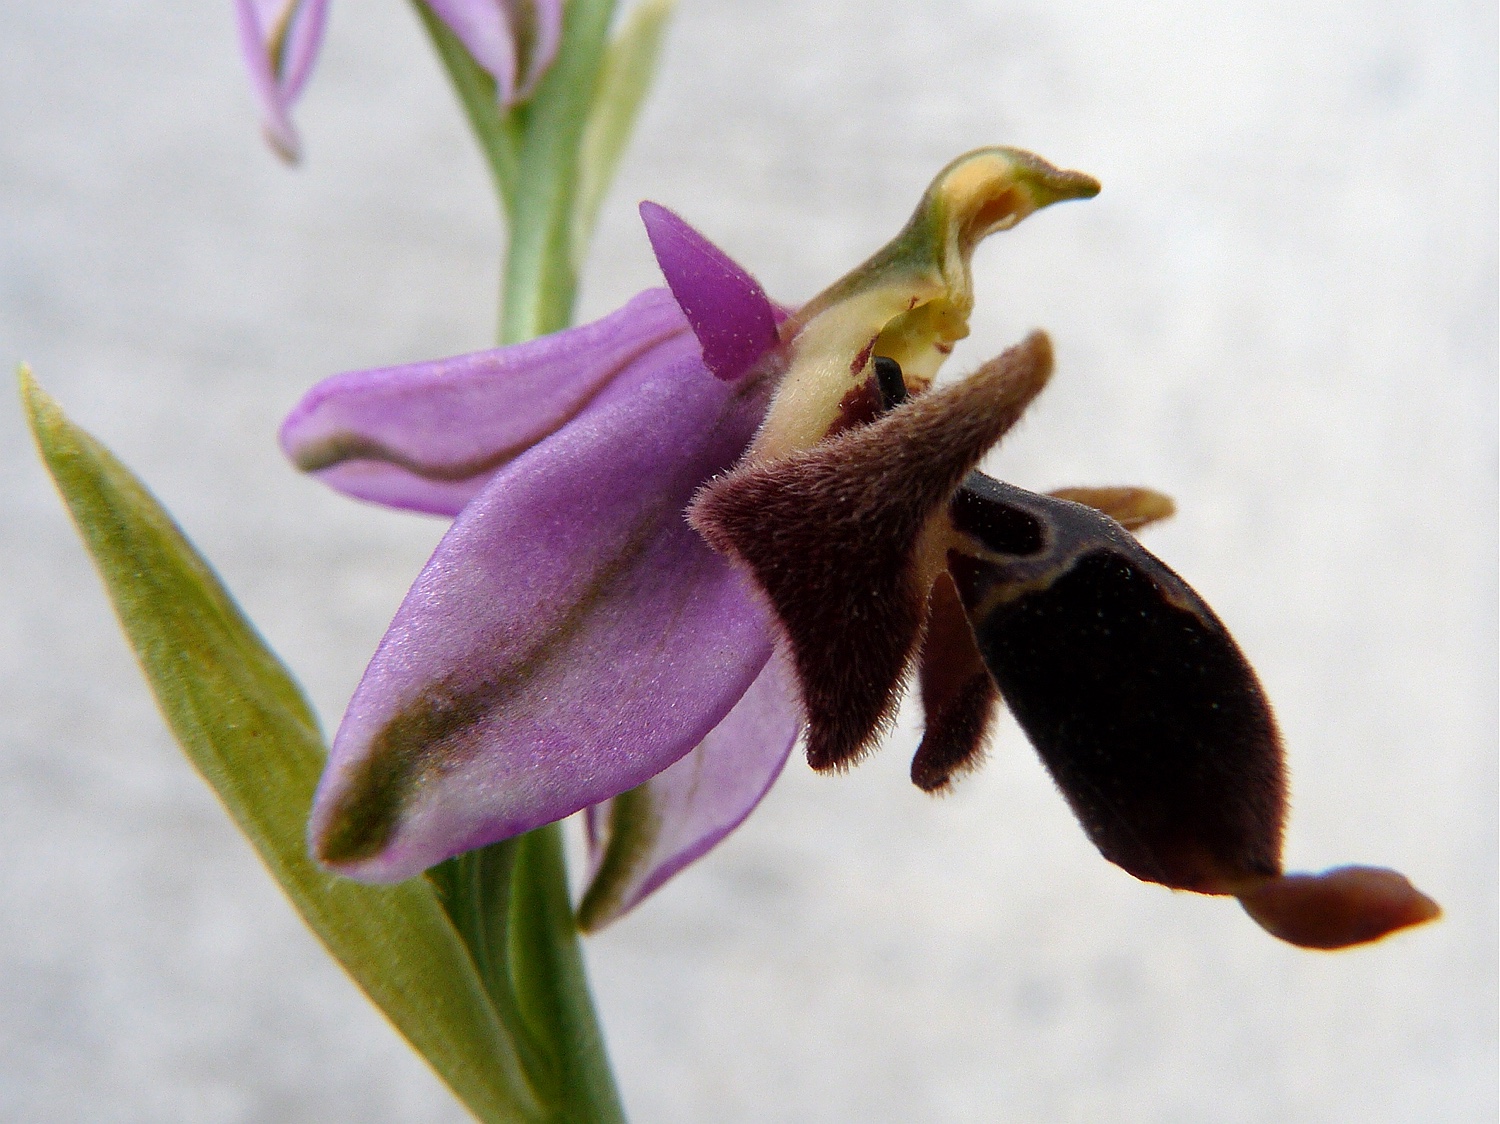 Heldreichs Ragwurz, Ophrys scolopax ssp. heldreichii